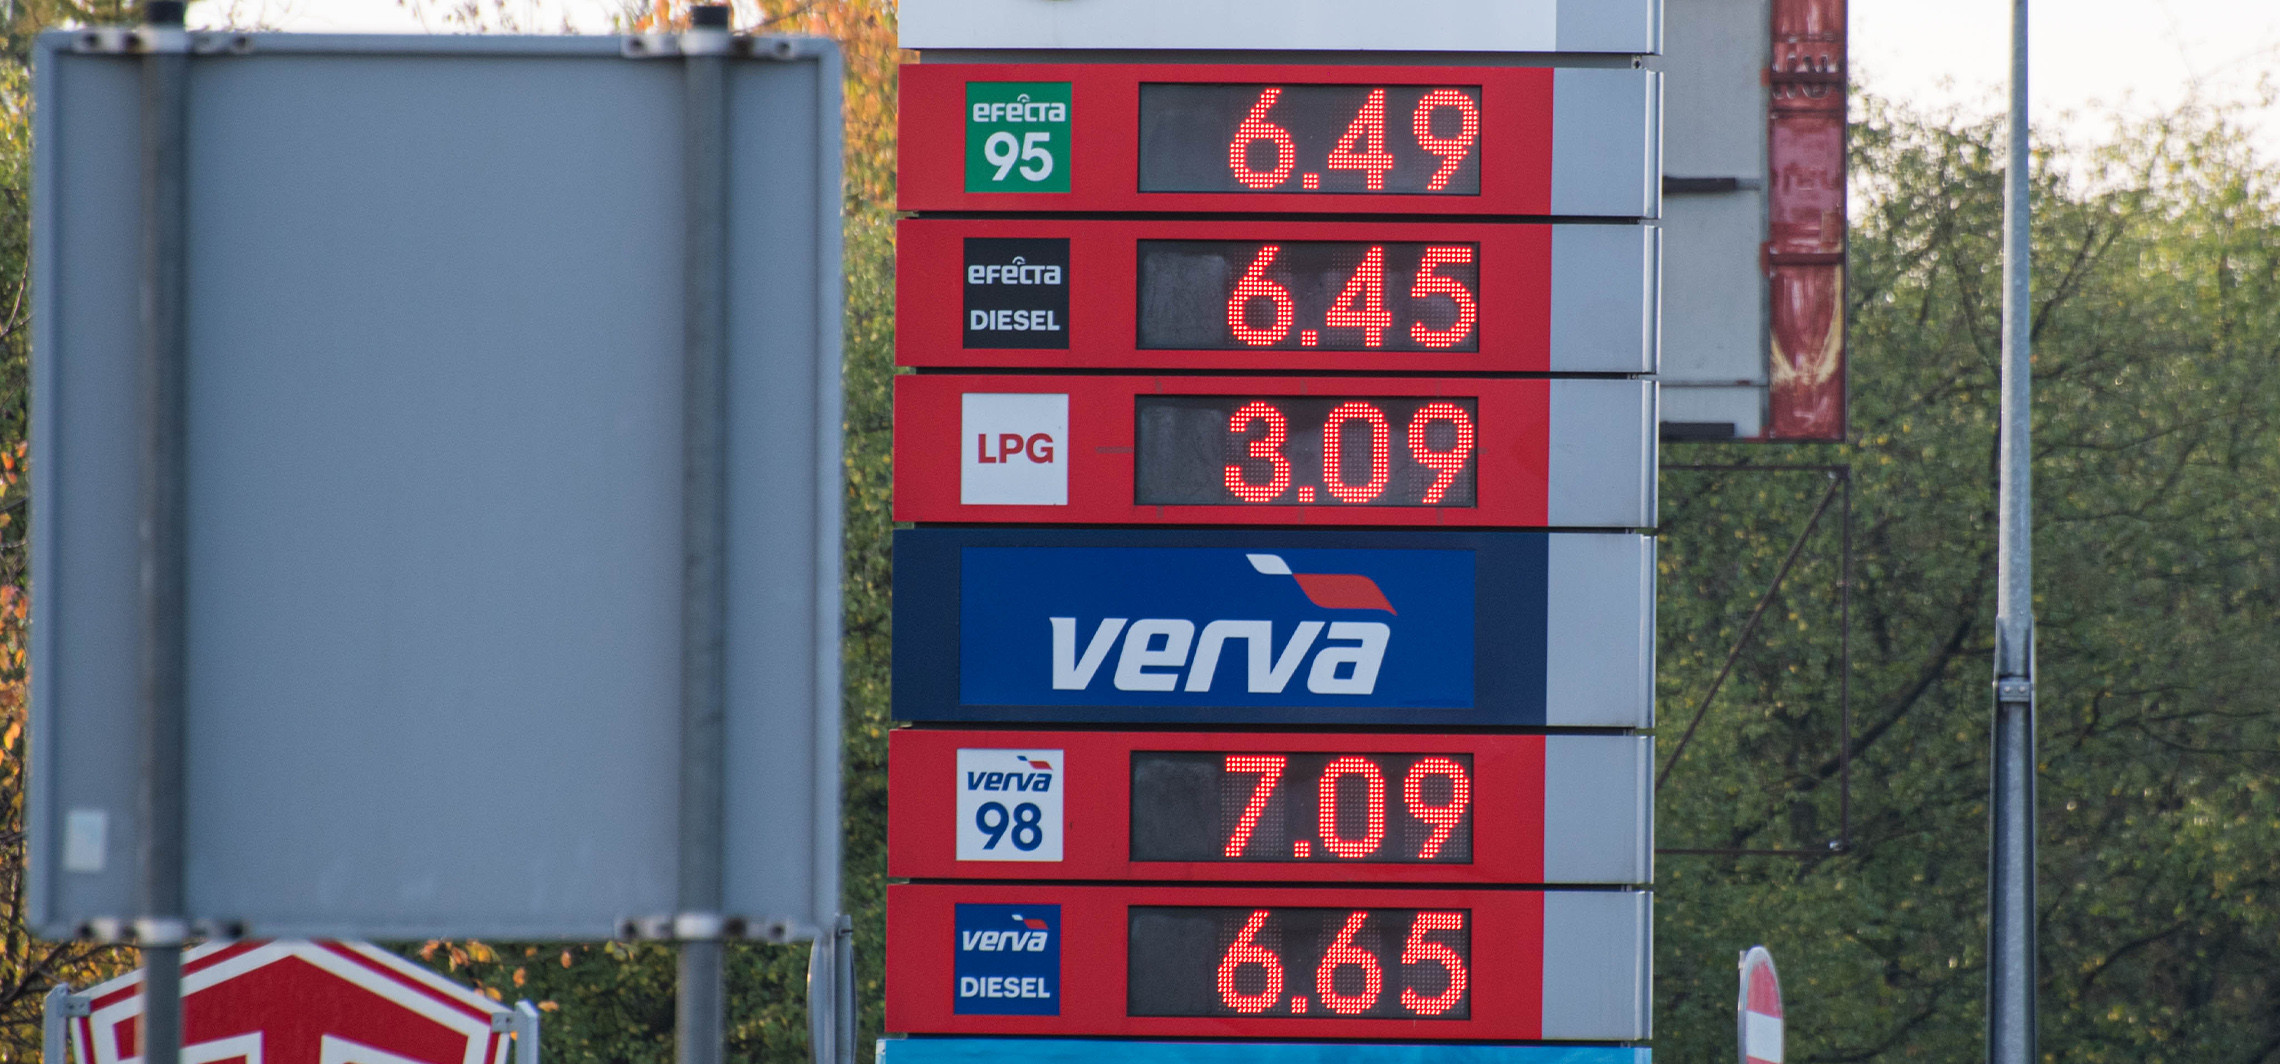 Inowrocław - Powyborcza rzeczywistość: ceny paliw w górę